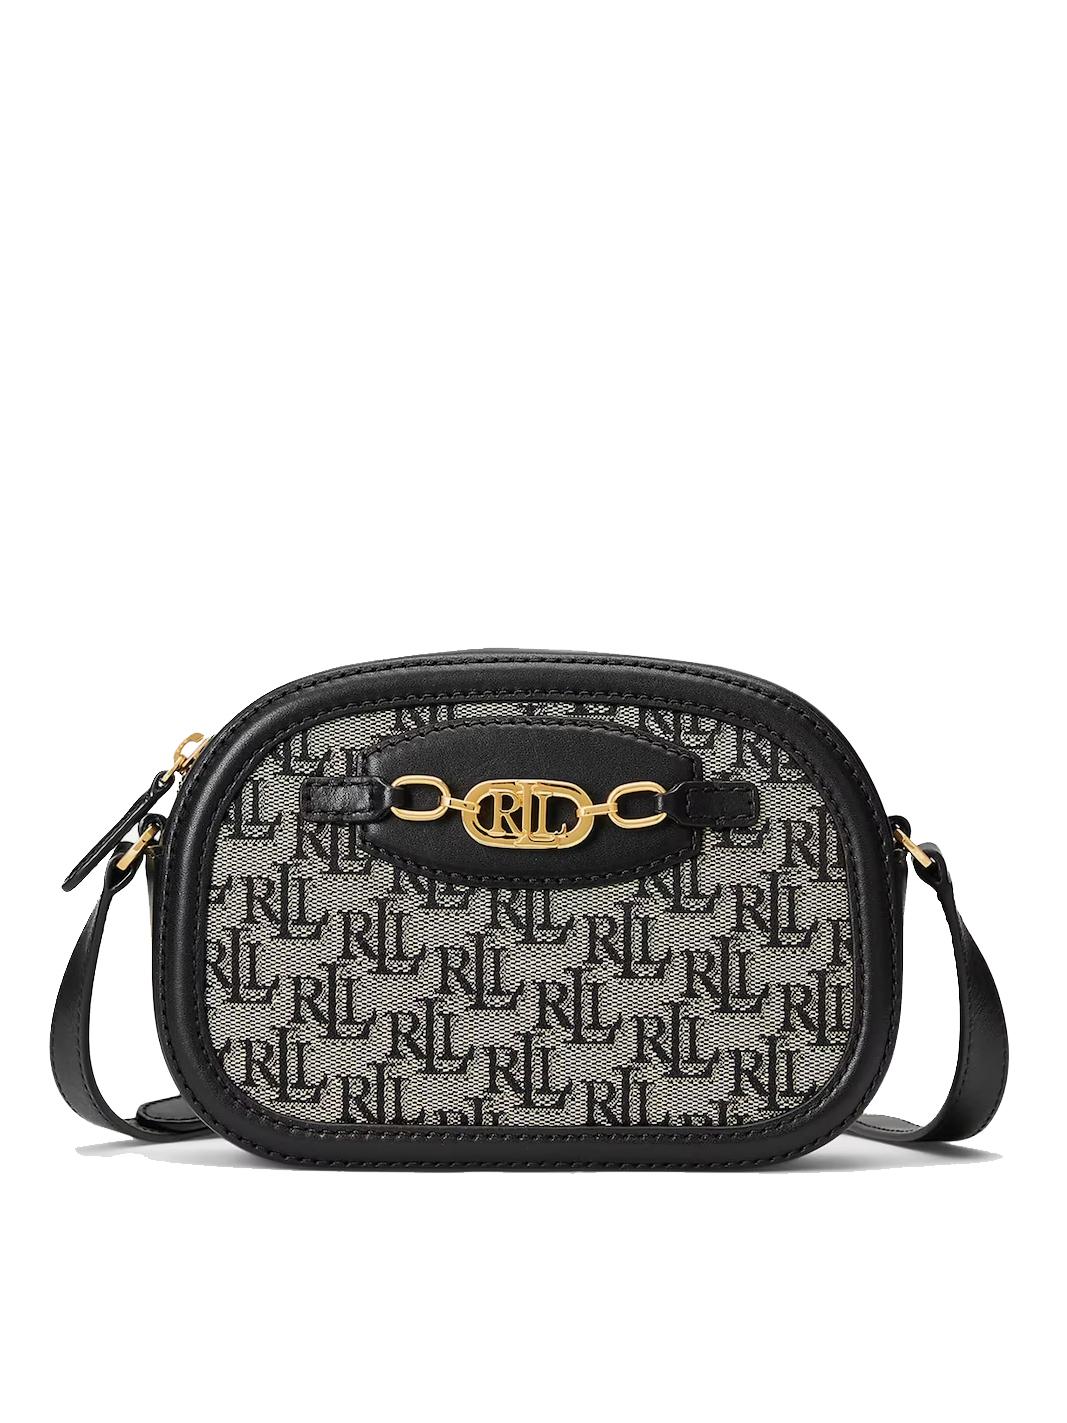 Ralph Lauren Jordynn Shoulder Bag Black - Buy At Outlet Prices!